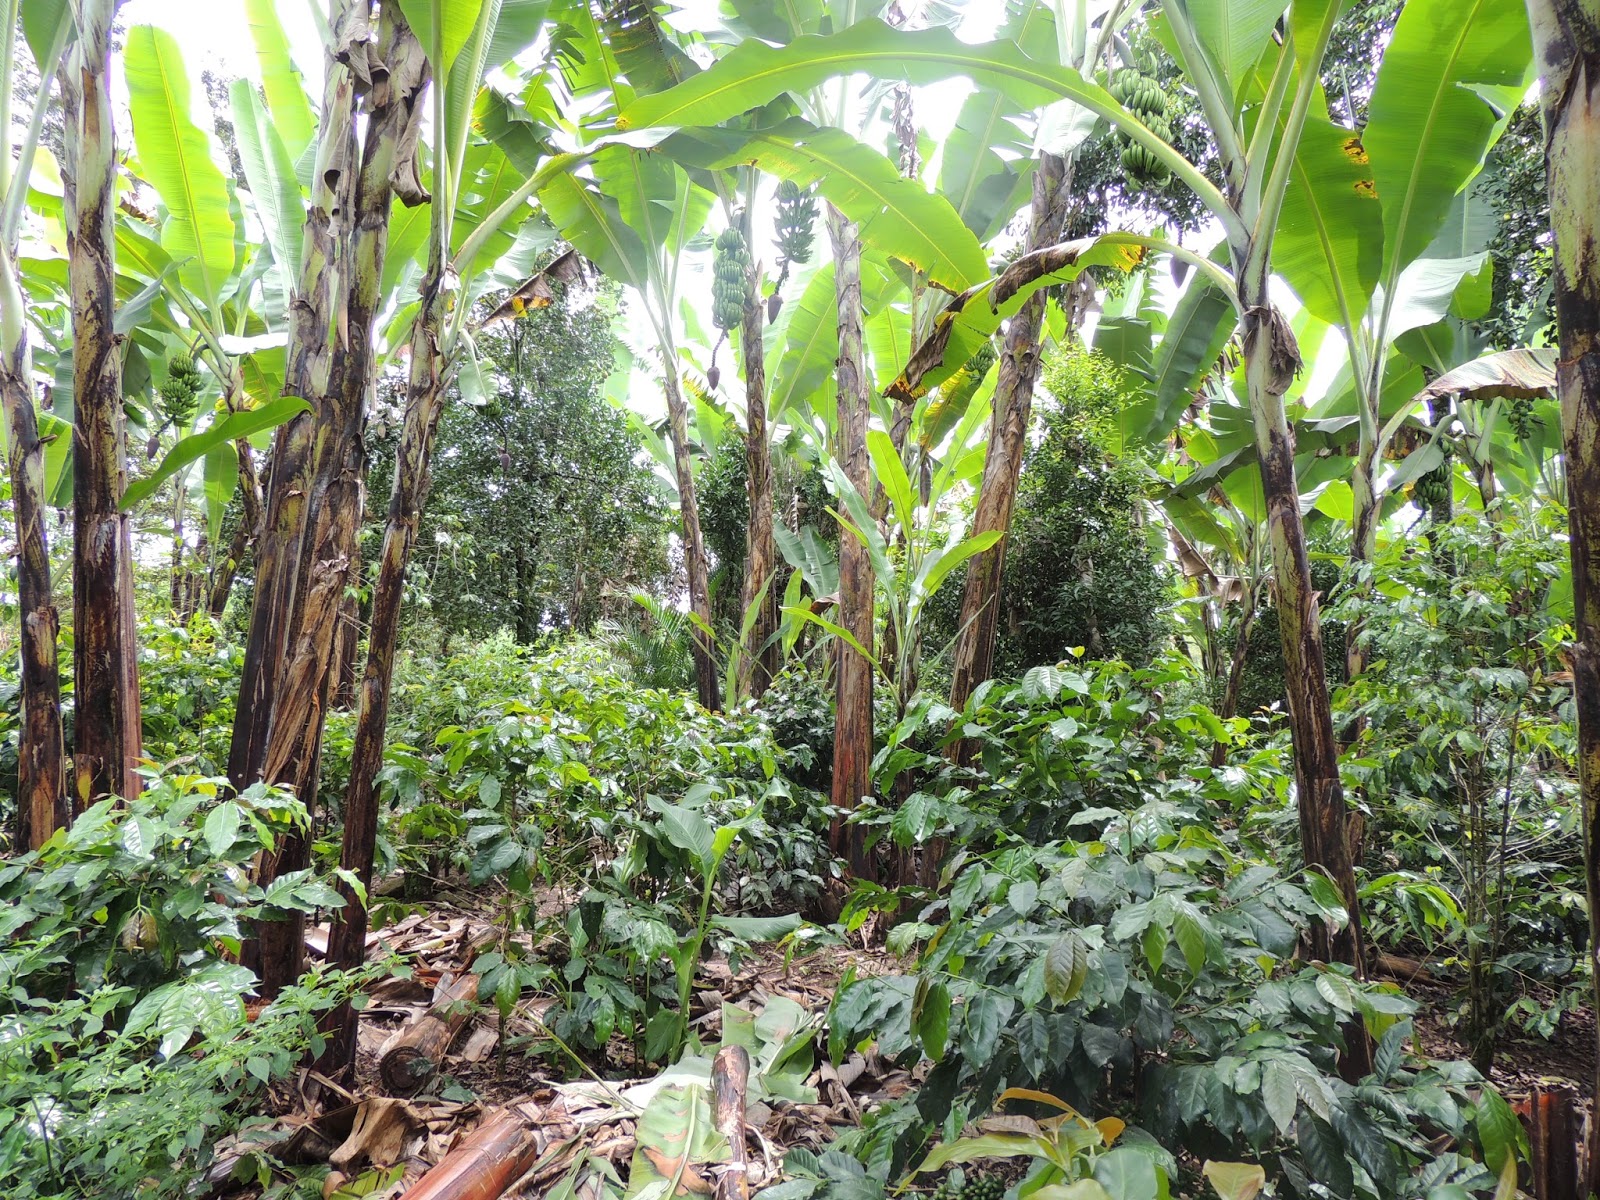  Estudiantes de Veracruz producen papel ecológico con desechos de plátano